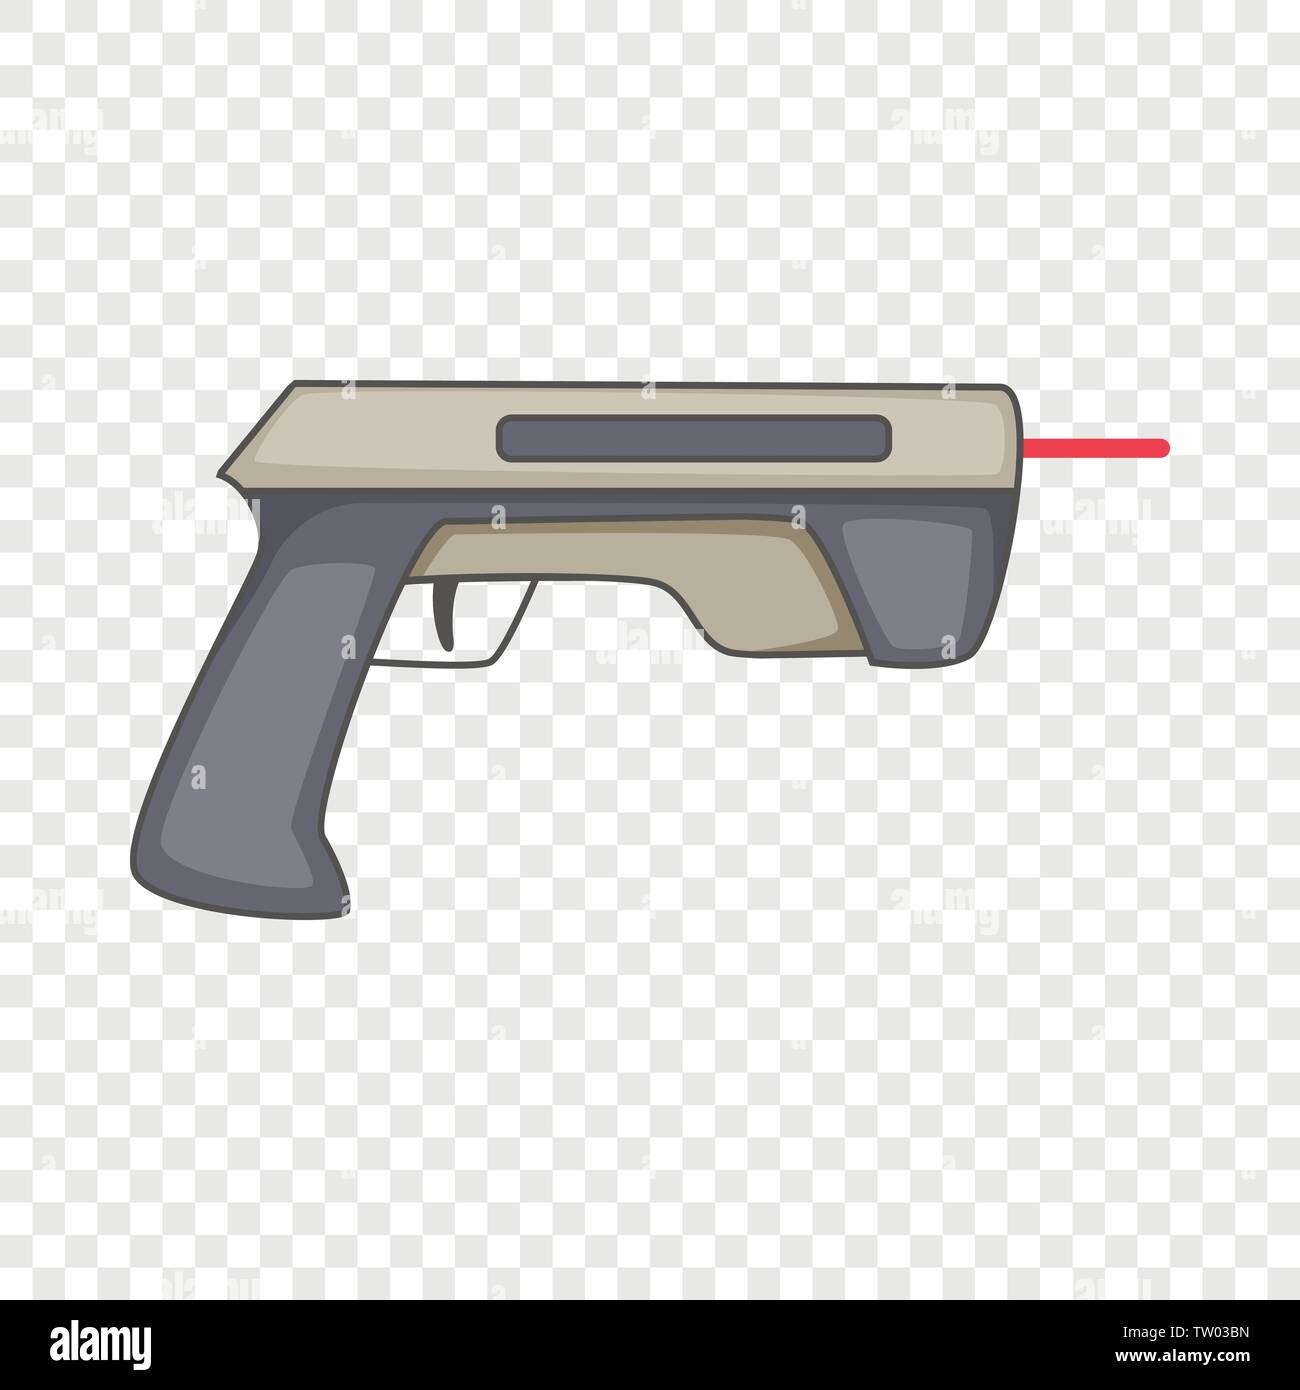 Laser beam pistol icon, cartoon style Stock Vector Image & Art - Alamy